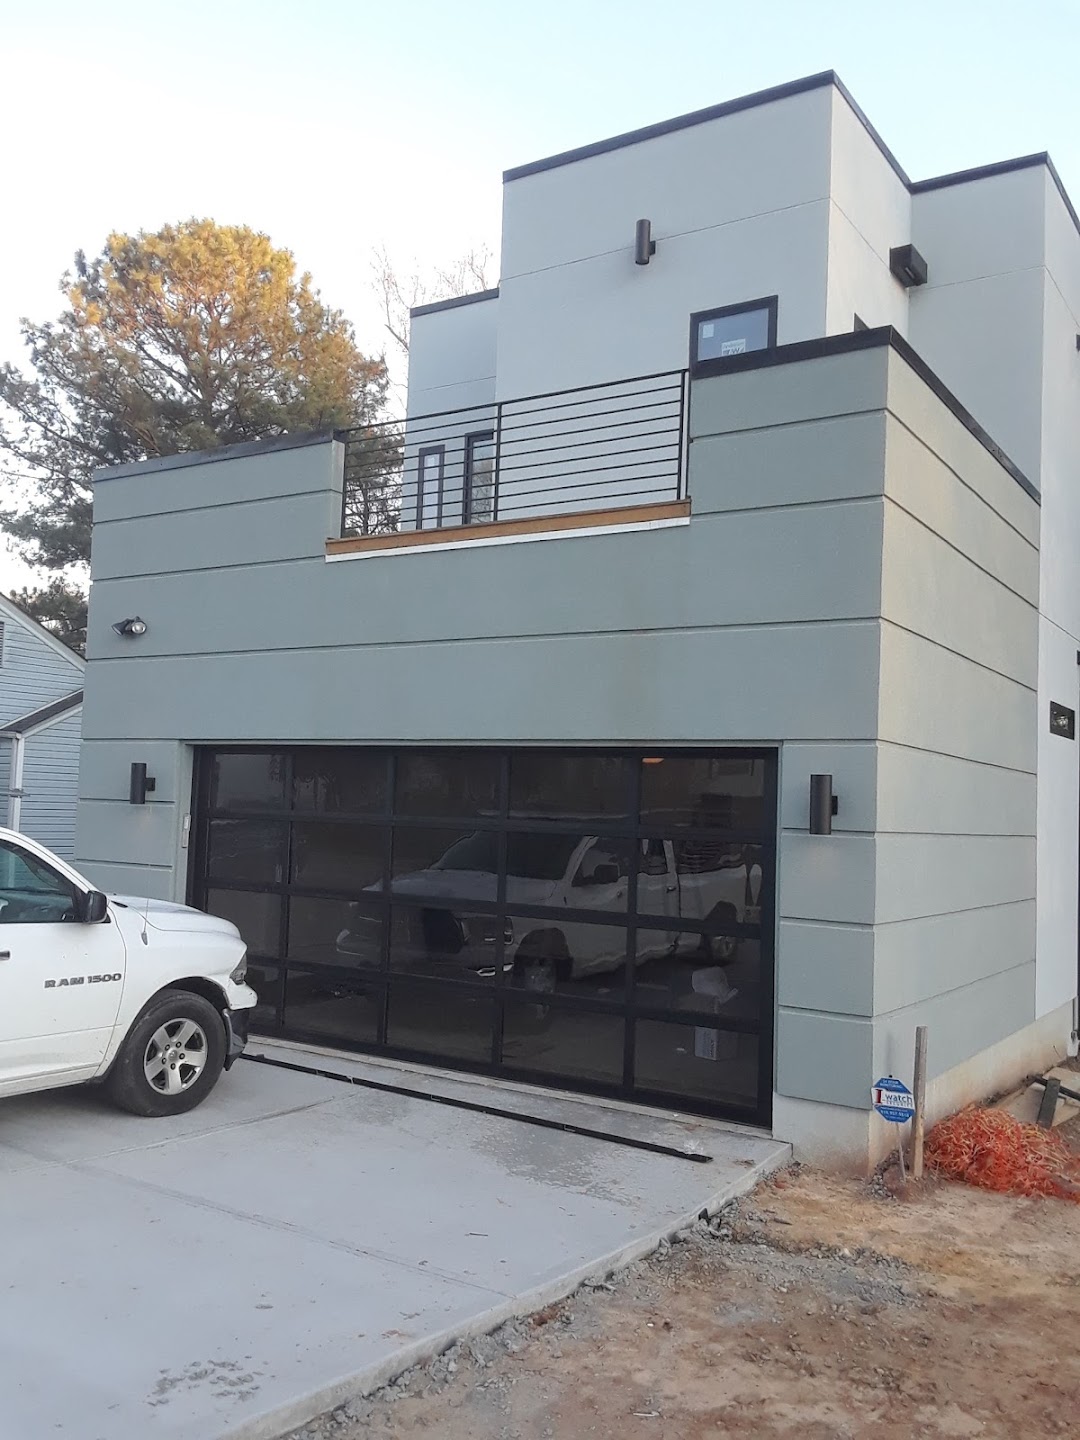 Garage Door Solutions - Garage Door Installation | Garage Door Opener Installation | Garage Door Spring